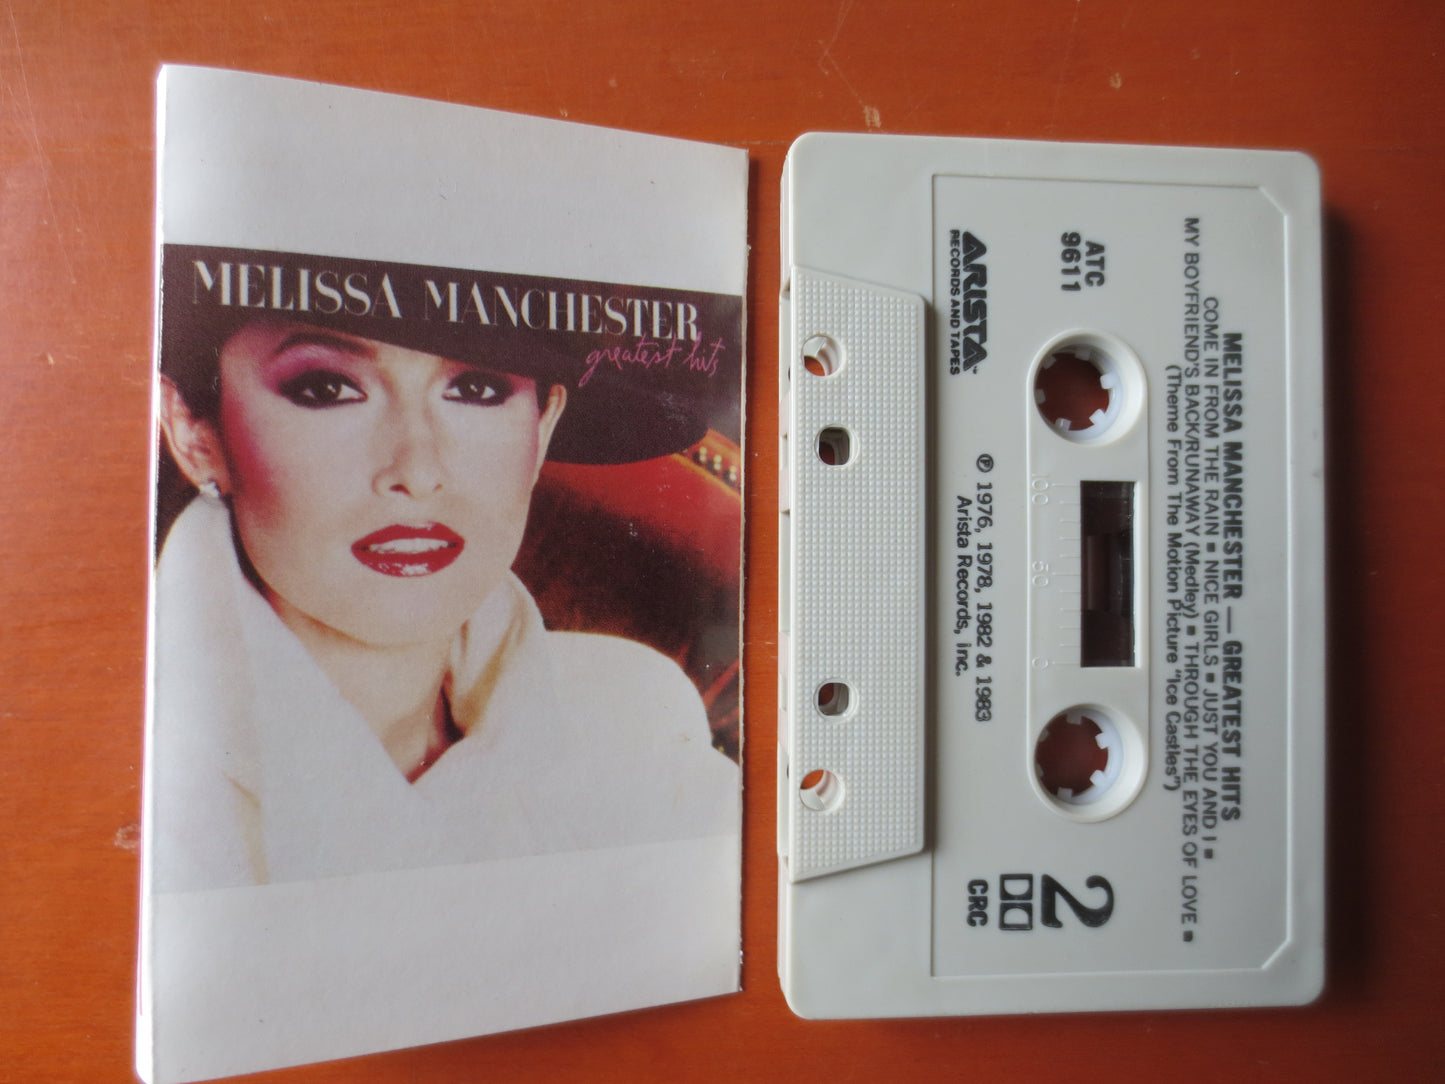 Melissa Manchester, Pop Music Tape, Pop Music Album, Tape Cassette, Vintage Cassettes, Pop Music Cassette, Cassette Music